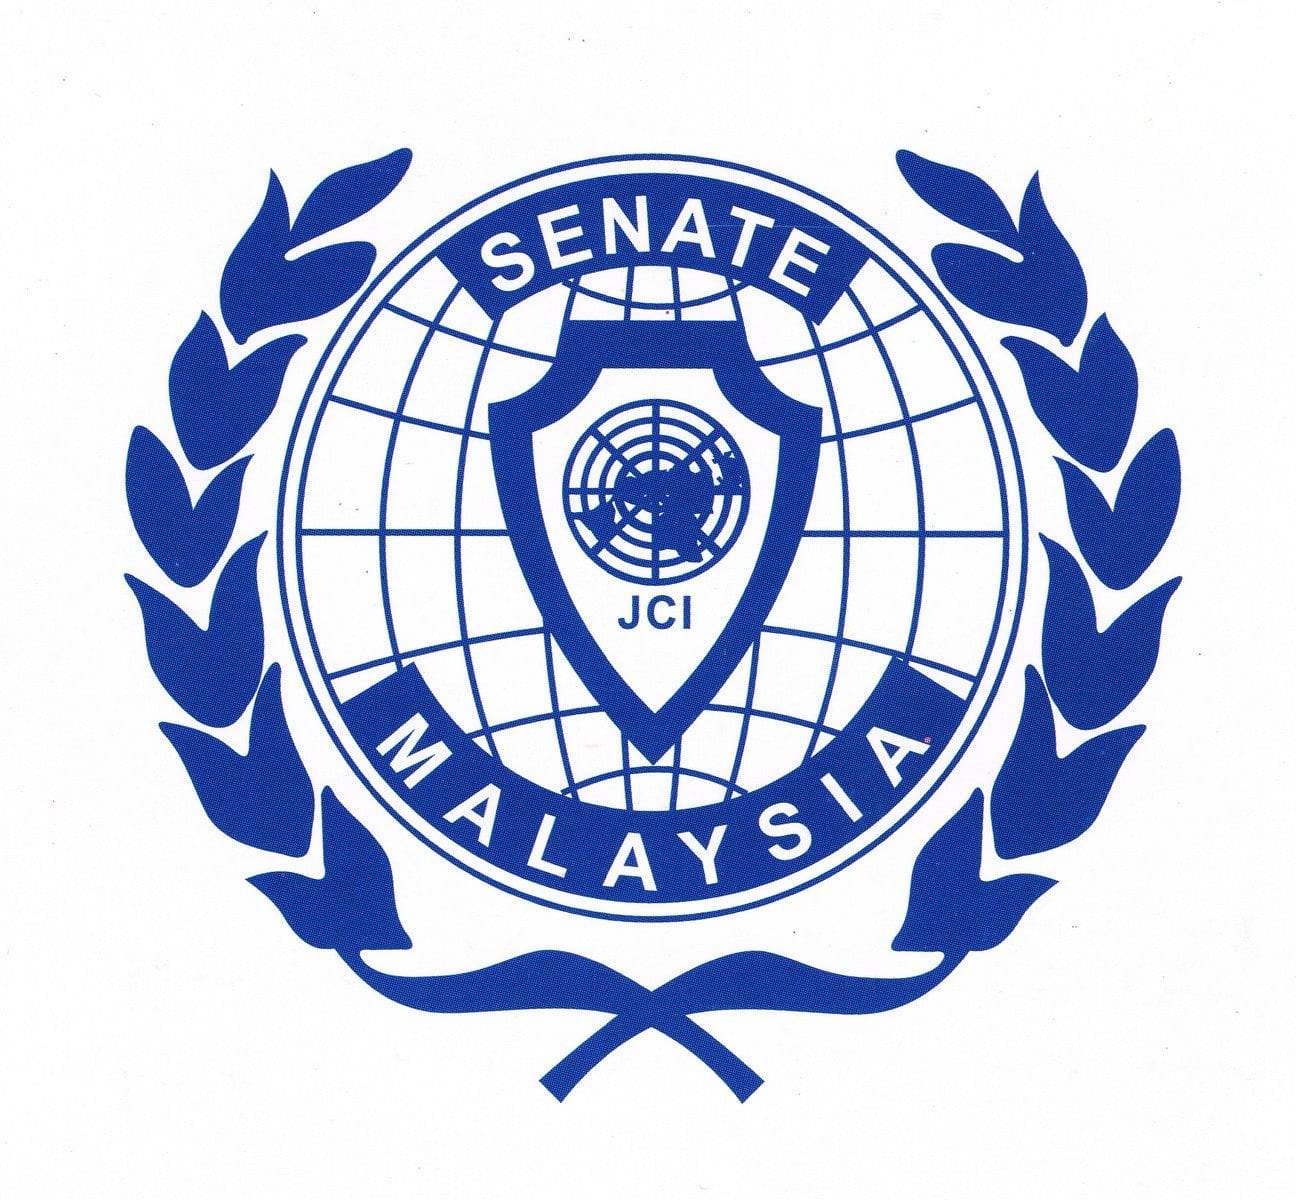 JCI Senate Malaysia